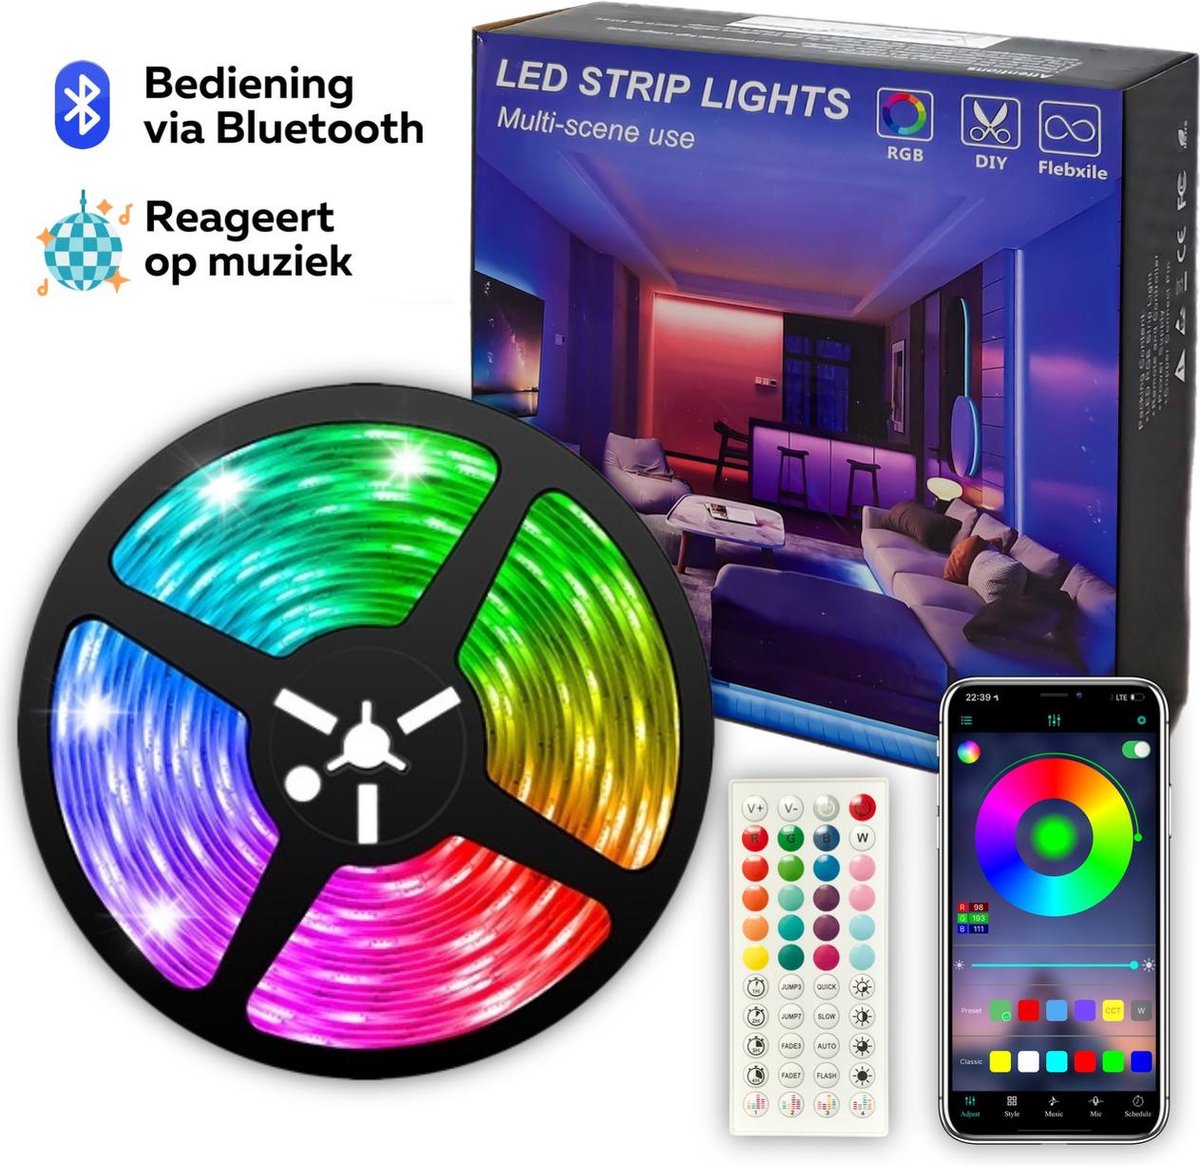 LED strip - 30 Meter - 16 Miljoen Kleuren - Afstandsbediening en App-besturing - Bluetooth - Muziekgestuurd - Zelfklevend